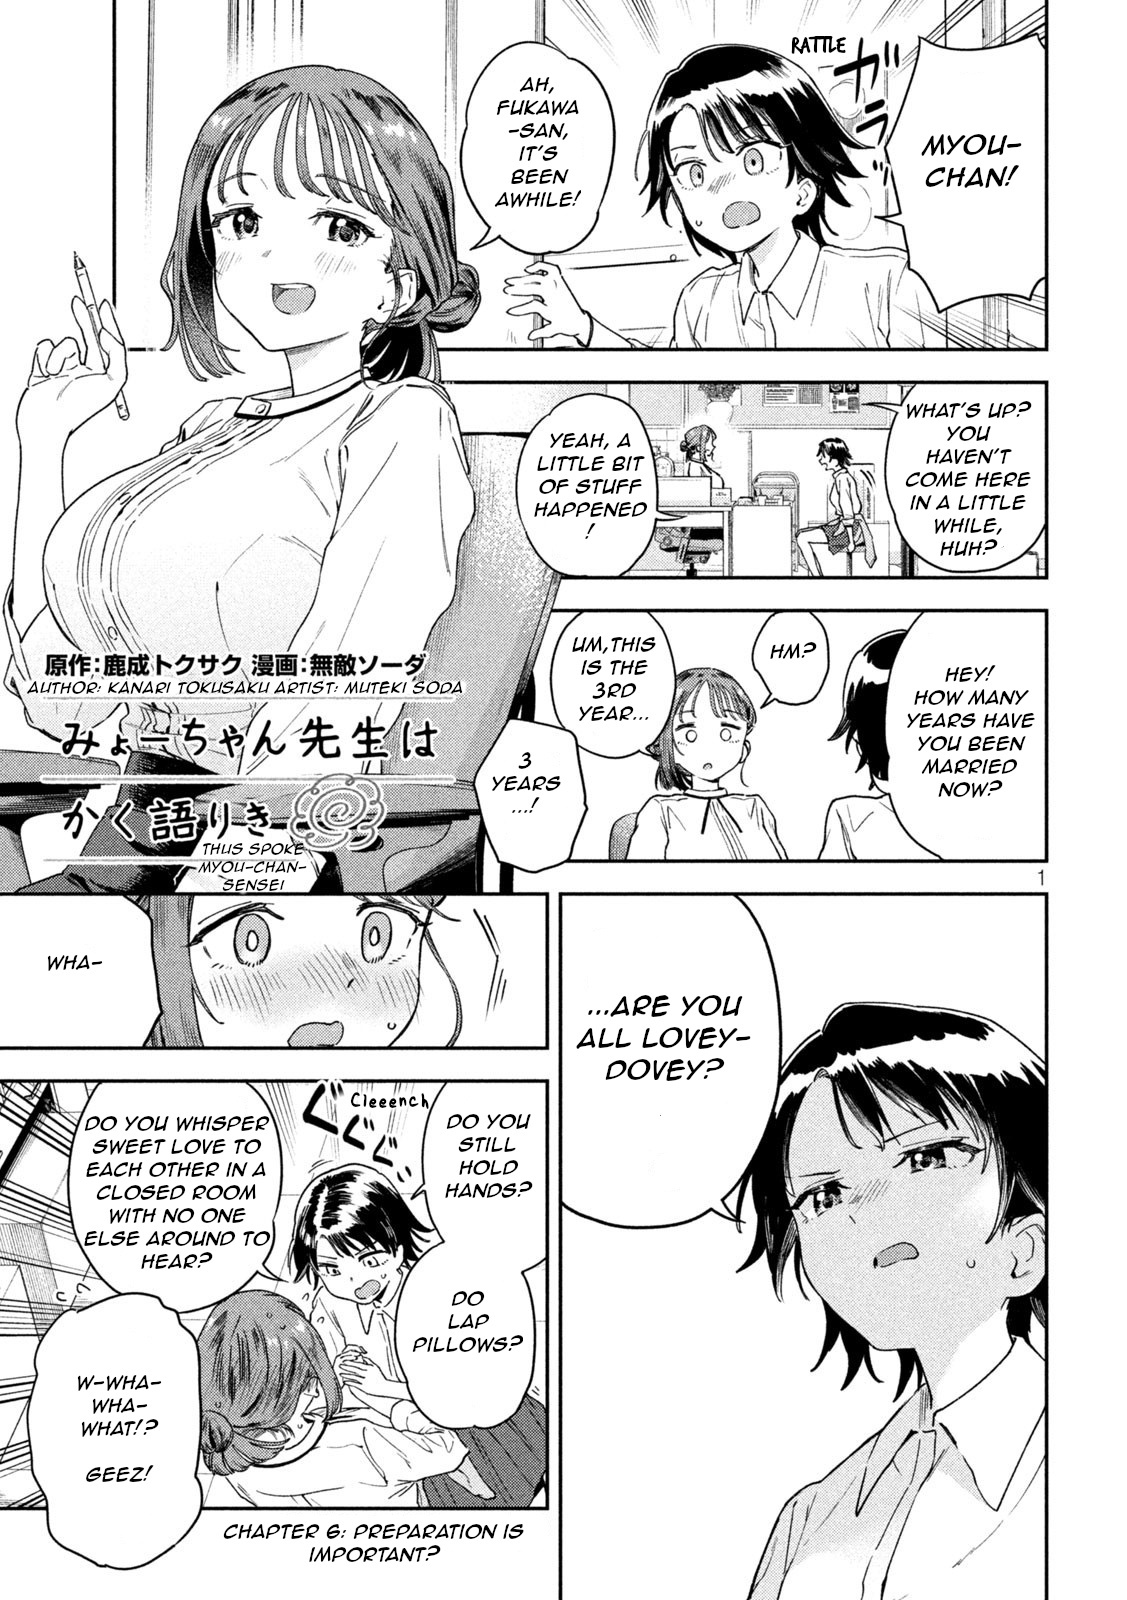 Miyo-Chan Sensei Said So - Page 1